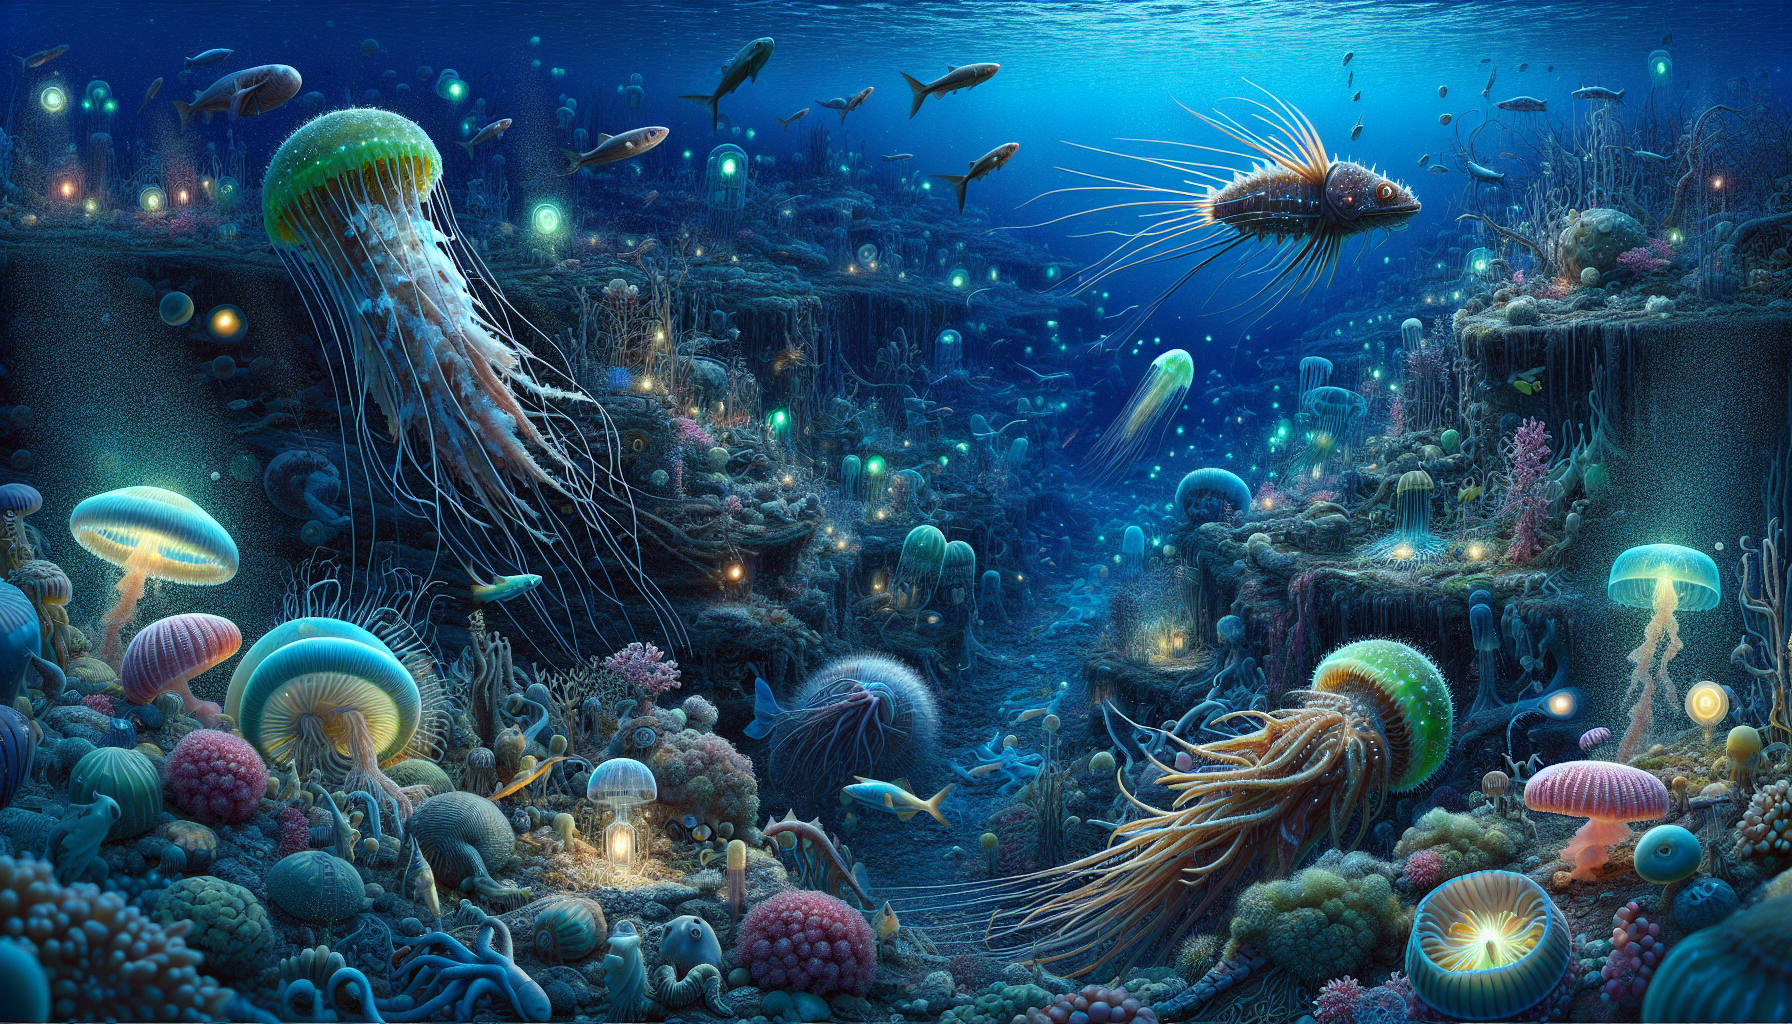 Hệ sinh thái biển sâu là một trong những vùng sinh thái giàu đa dạng và quan trọng nhất trên Trái Đất.